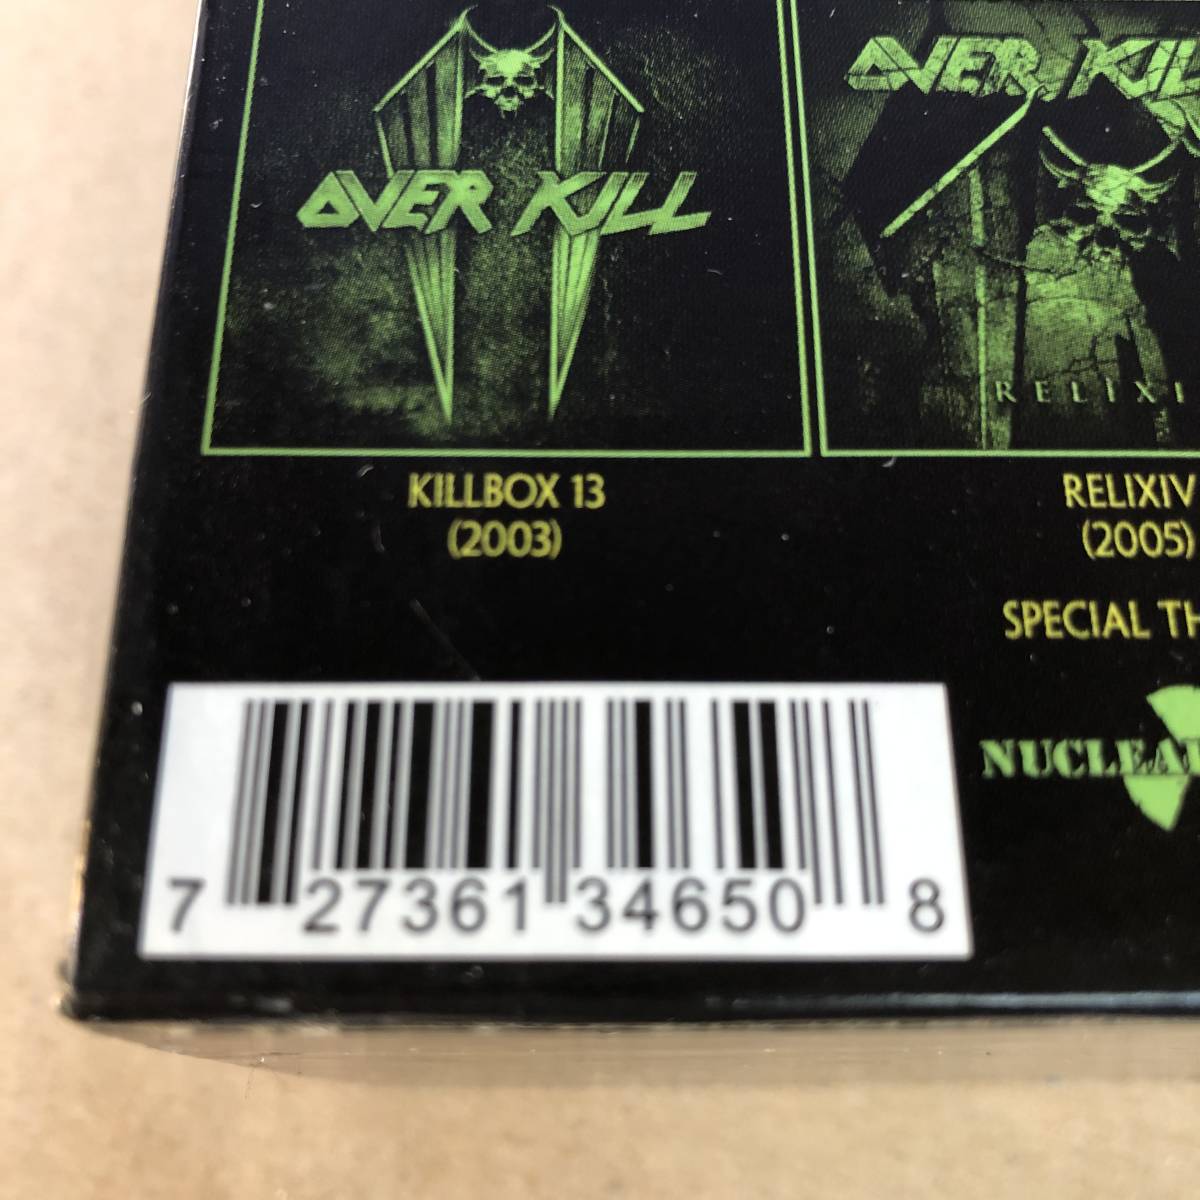 ■ Overkill オーヴァーキル Historikill (1995-2007)【BOX-CD】 27361 34650_画像8